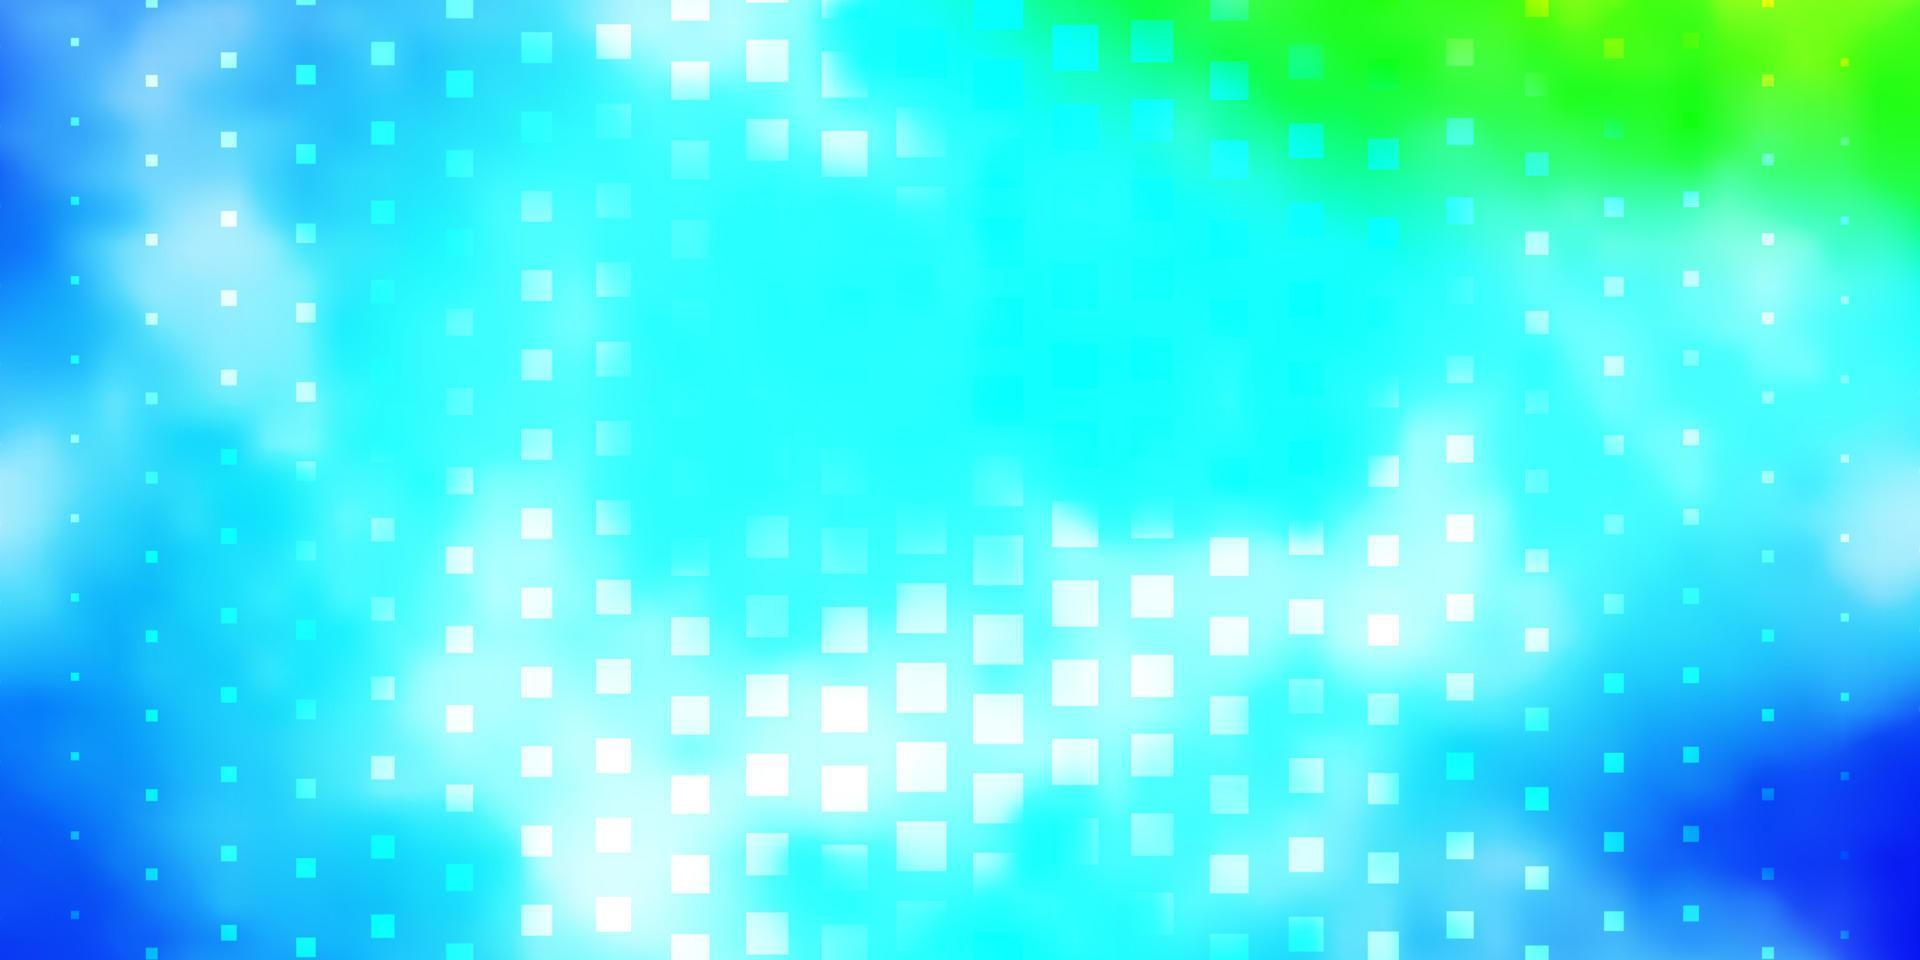 ljusblå, grön vektorlayout med linjer, rektanglar. vektor